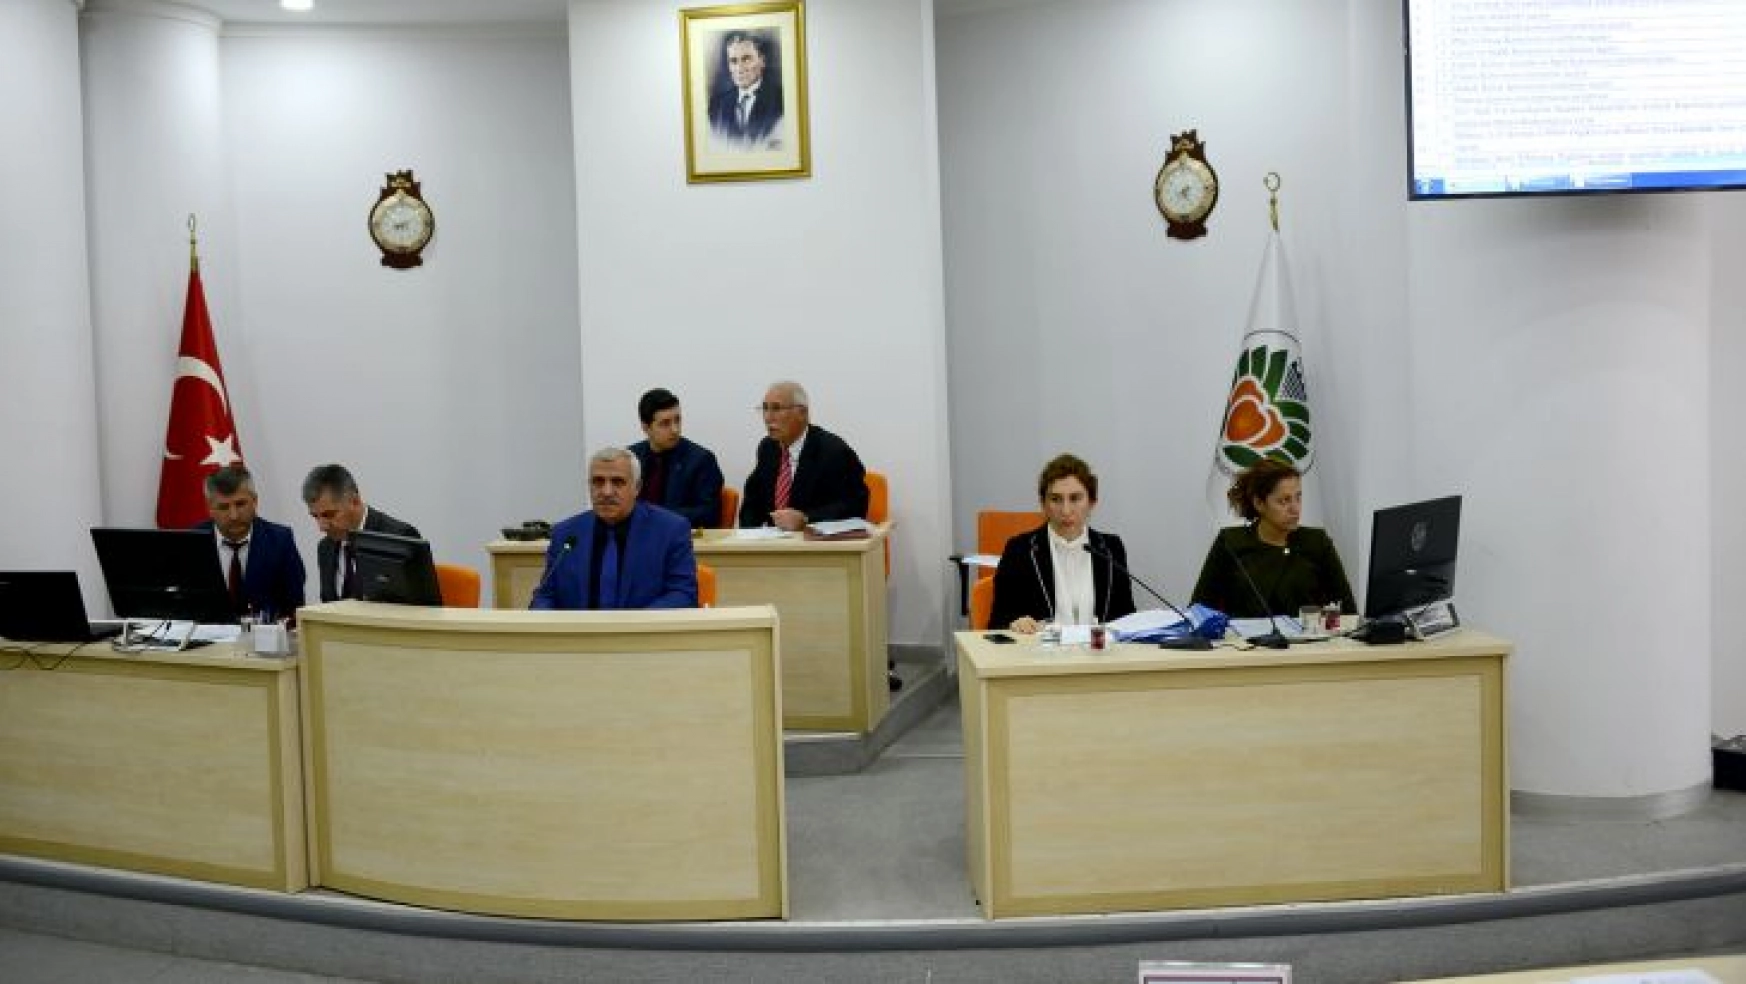 Encümen ve Komisyonlara üye seçimleri yapıldı